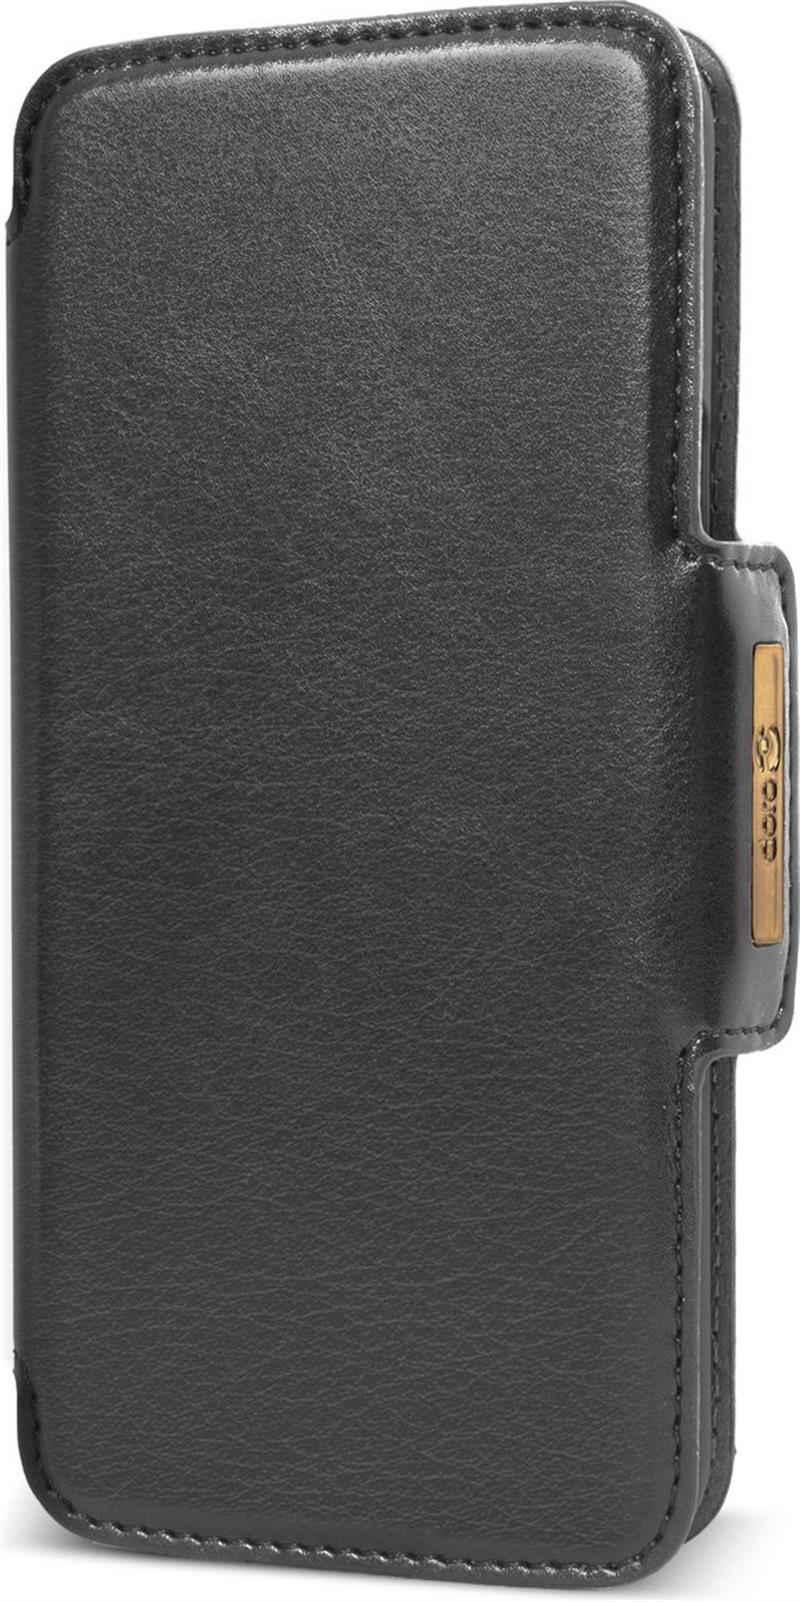 Doro 8050 Wallet Case Black